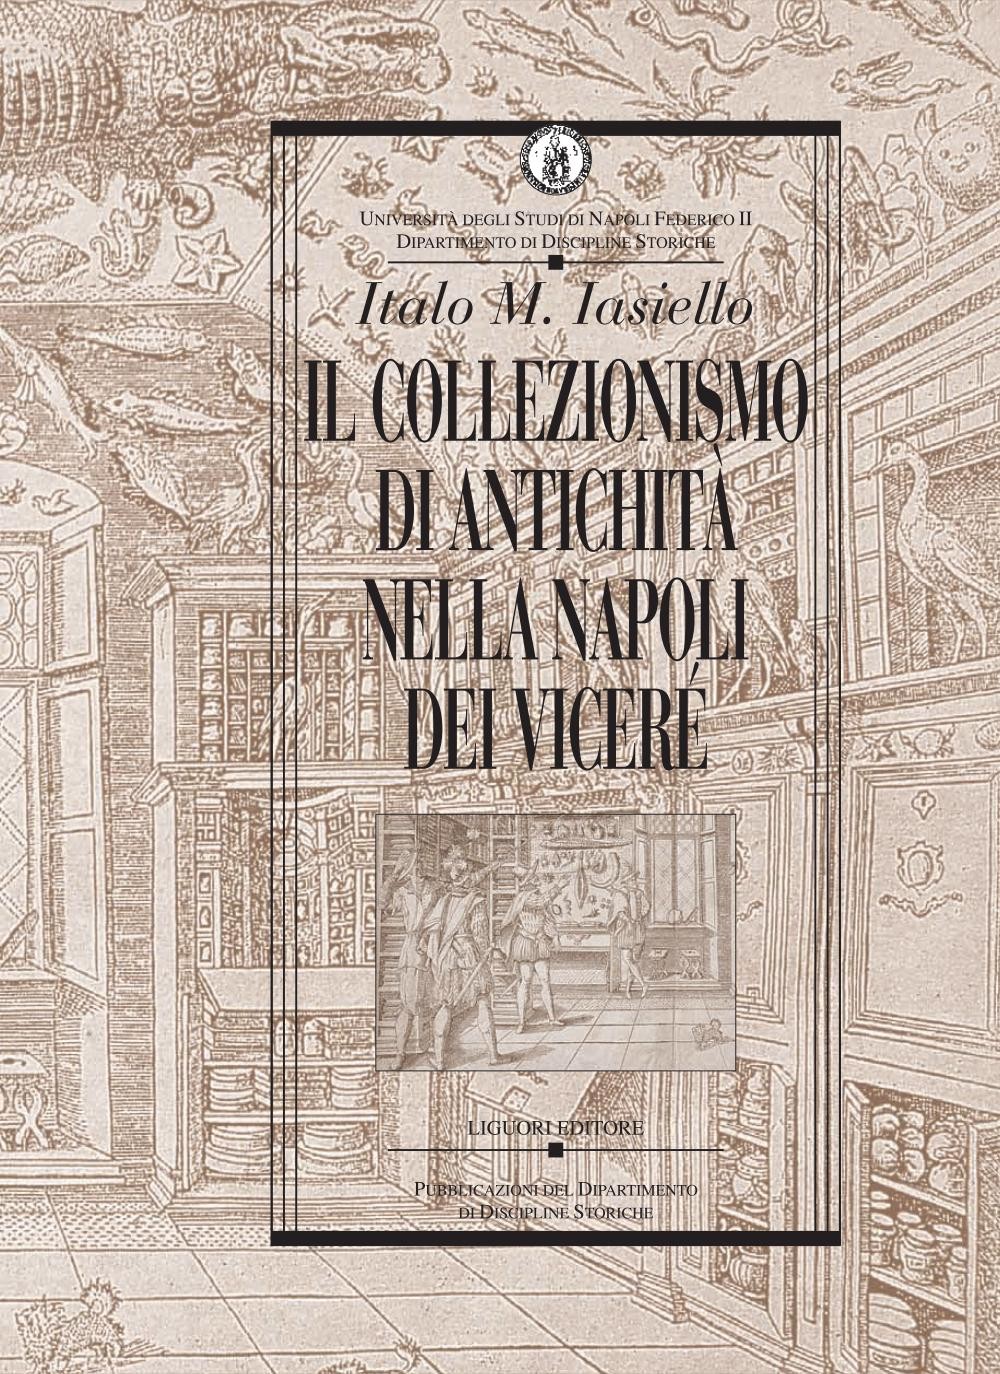 Il collezionismo di antichità nella Napoli dei Viceré - Librerie.coop